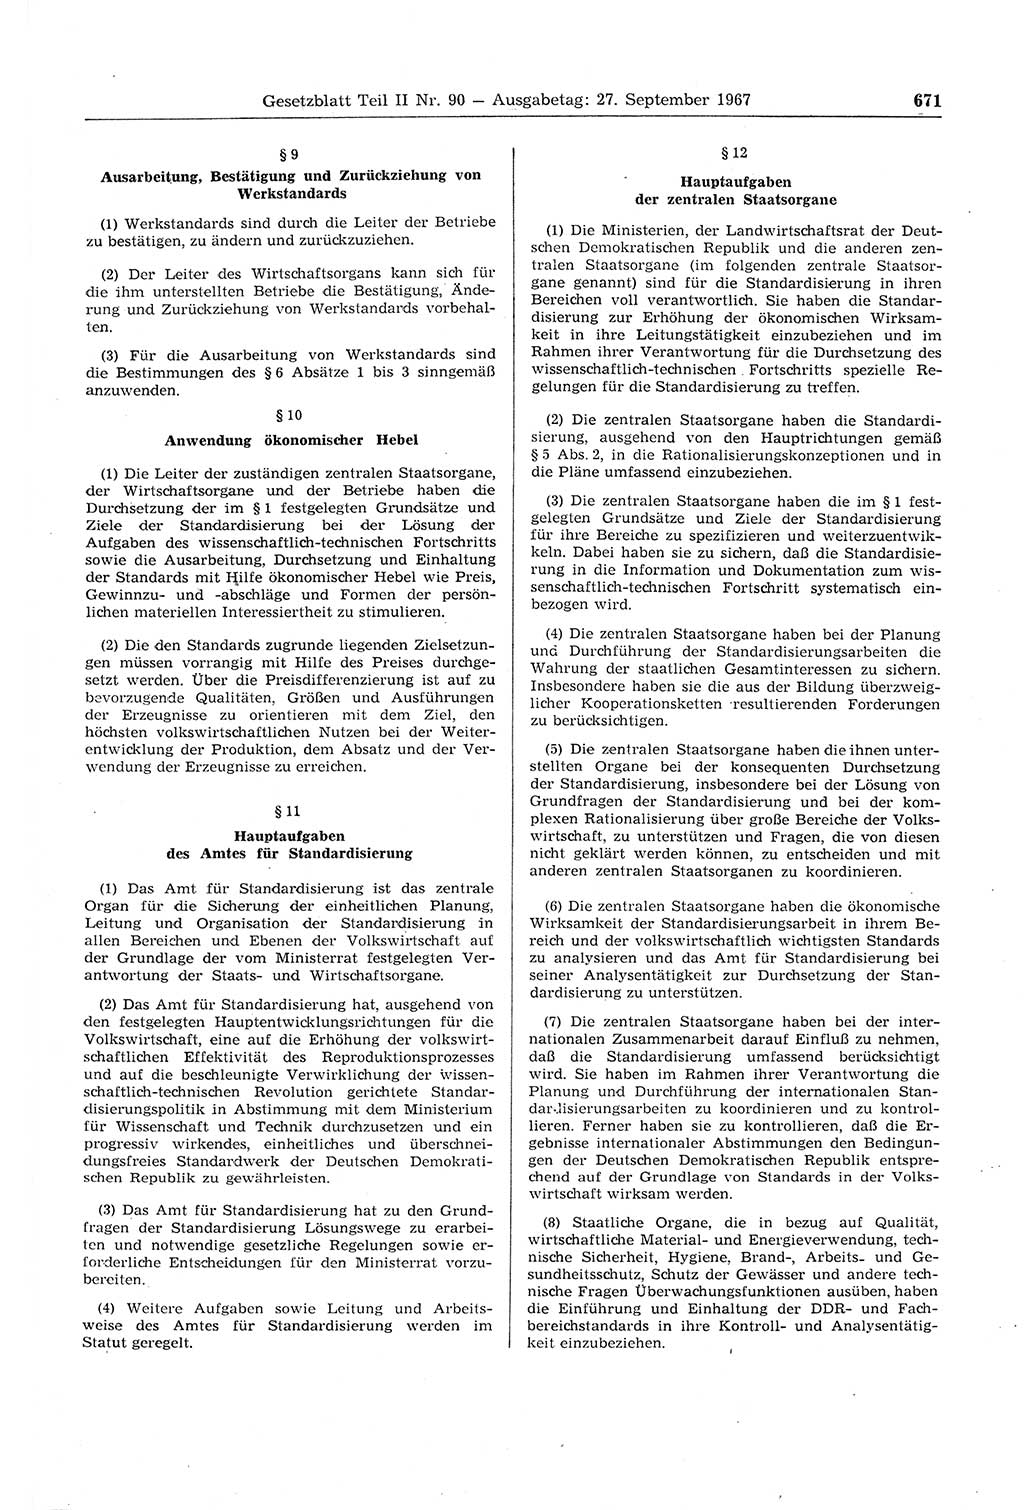 Gesetzblatt (GBl.) der Deutschen Demokratischen Republik (DDR) Teil ⅠⅠ 1967, Seite 671 (GBl. DDR ⅠⅠ 1967, S. 671)